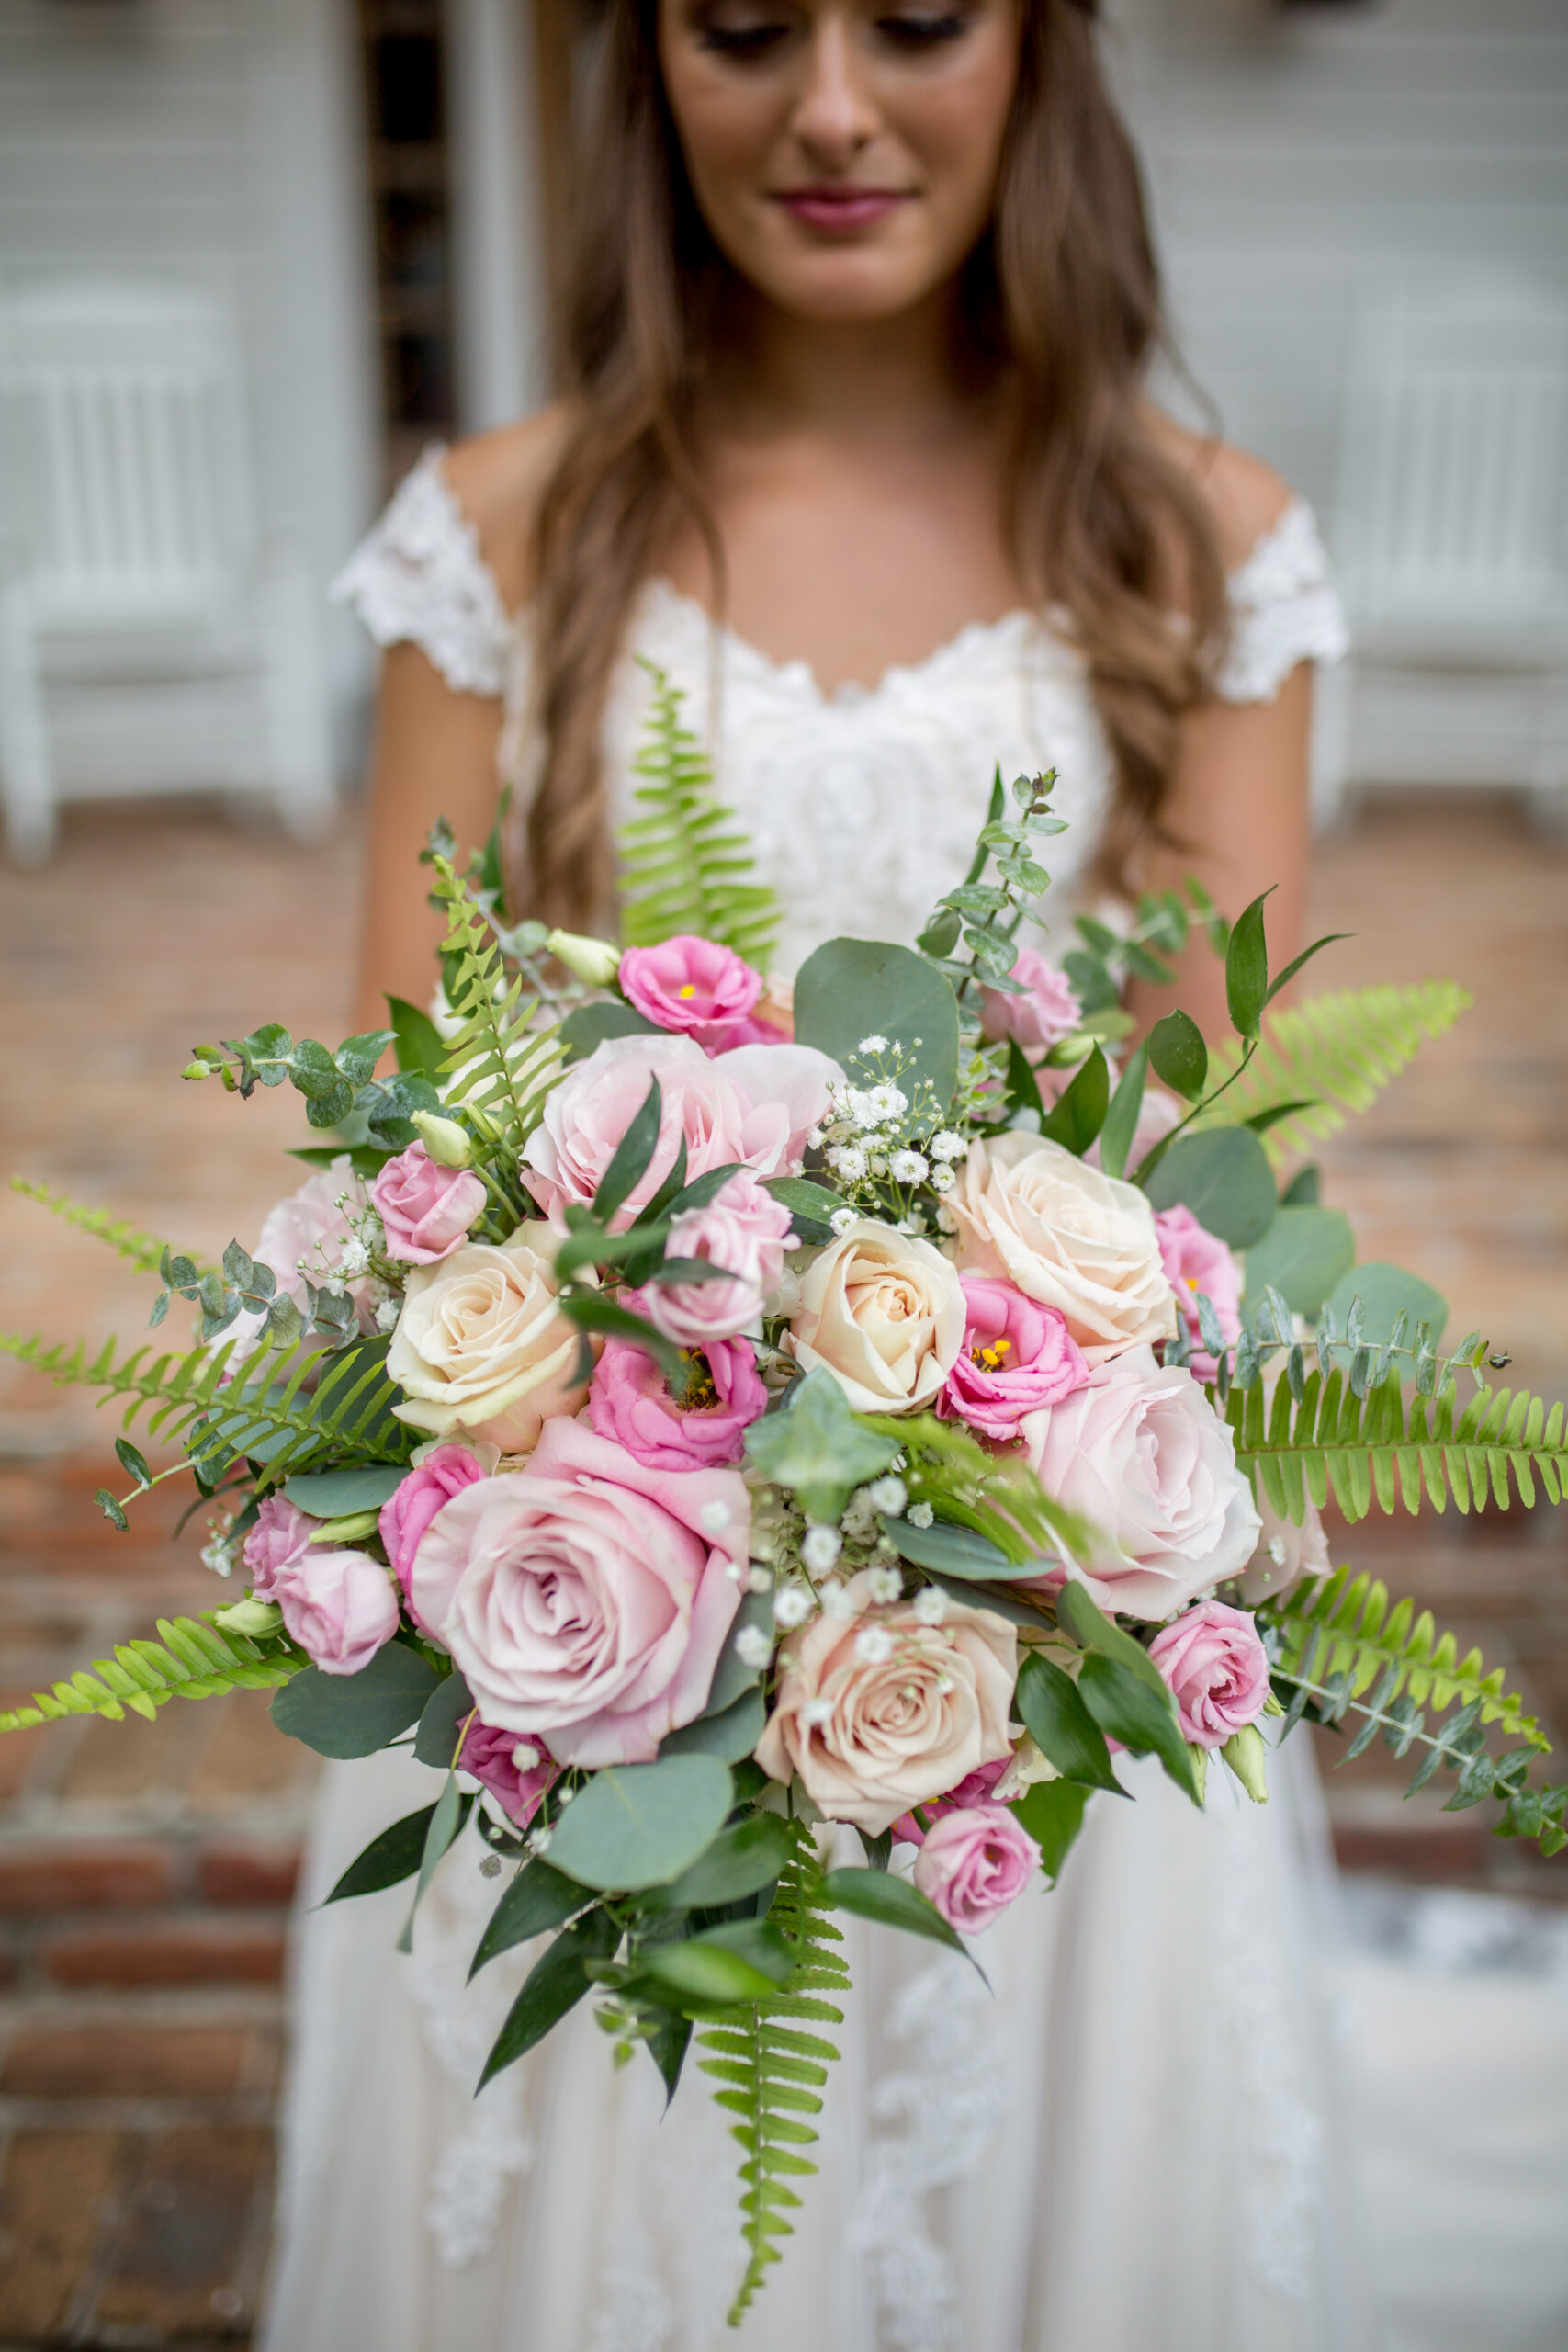 Bride carrying exquisite floral arrangements for her bridal bouquet